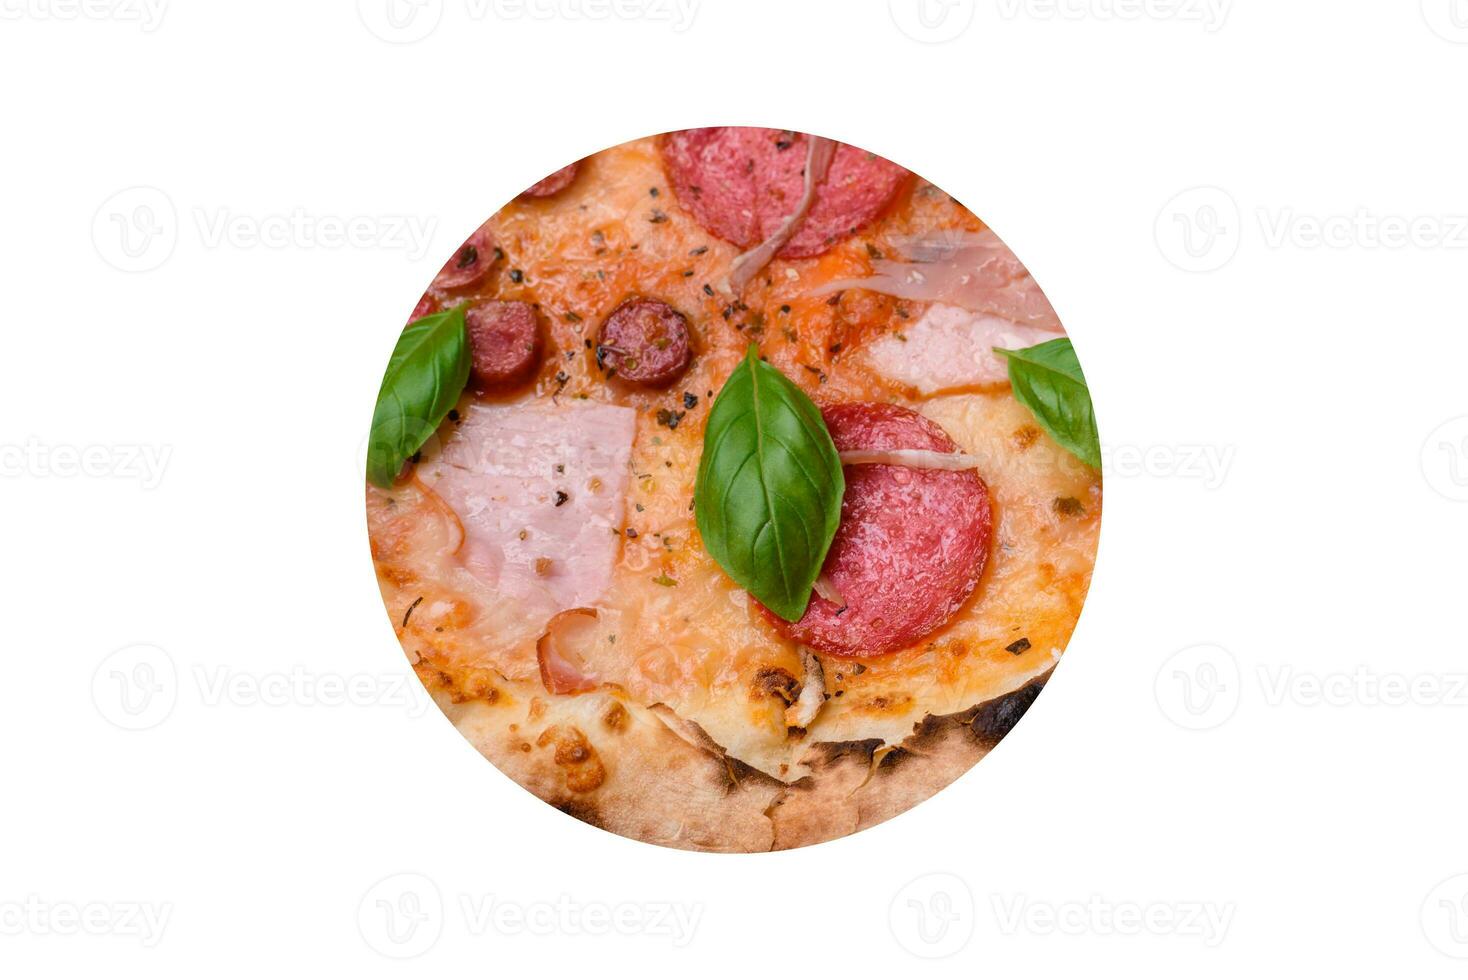 délicieux Frais four cuit Pizza avec salami, Viande, fromage, tomates photo